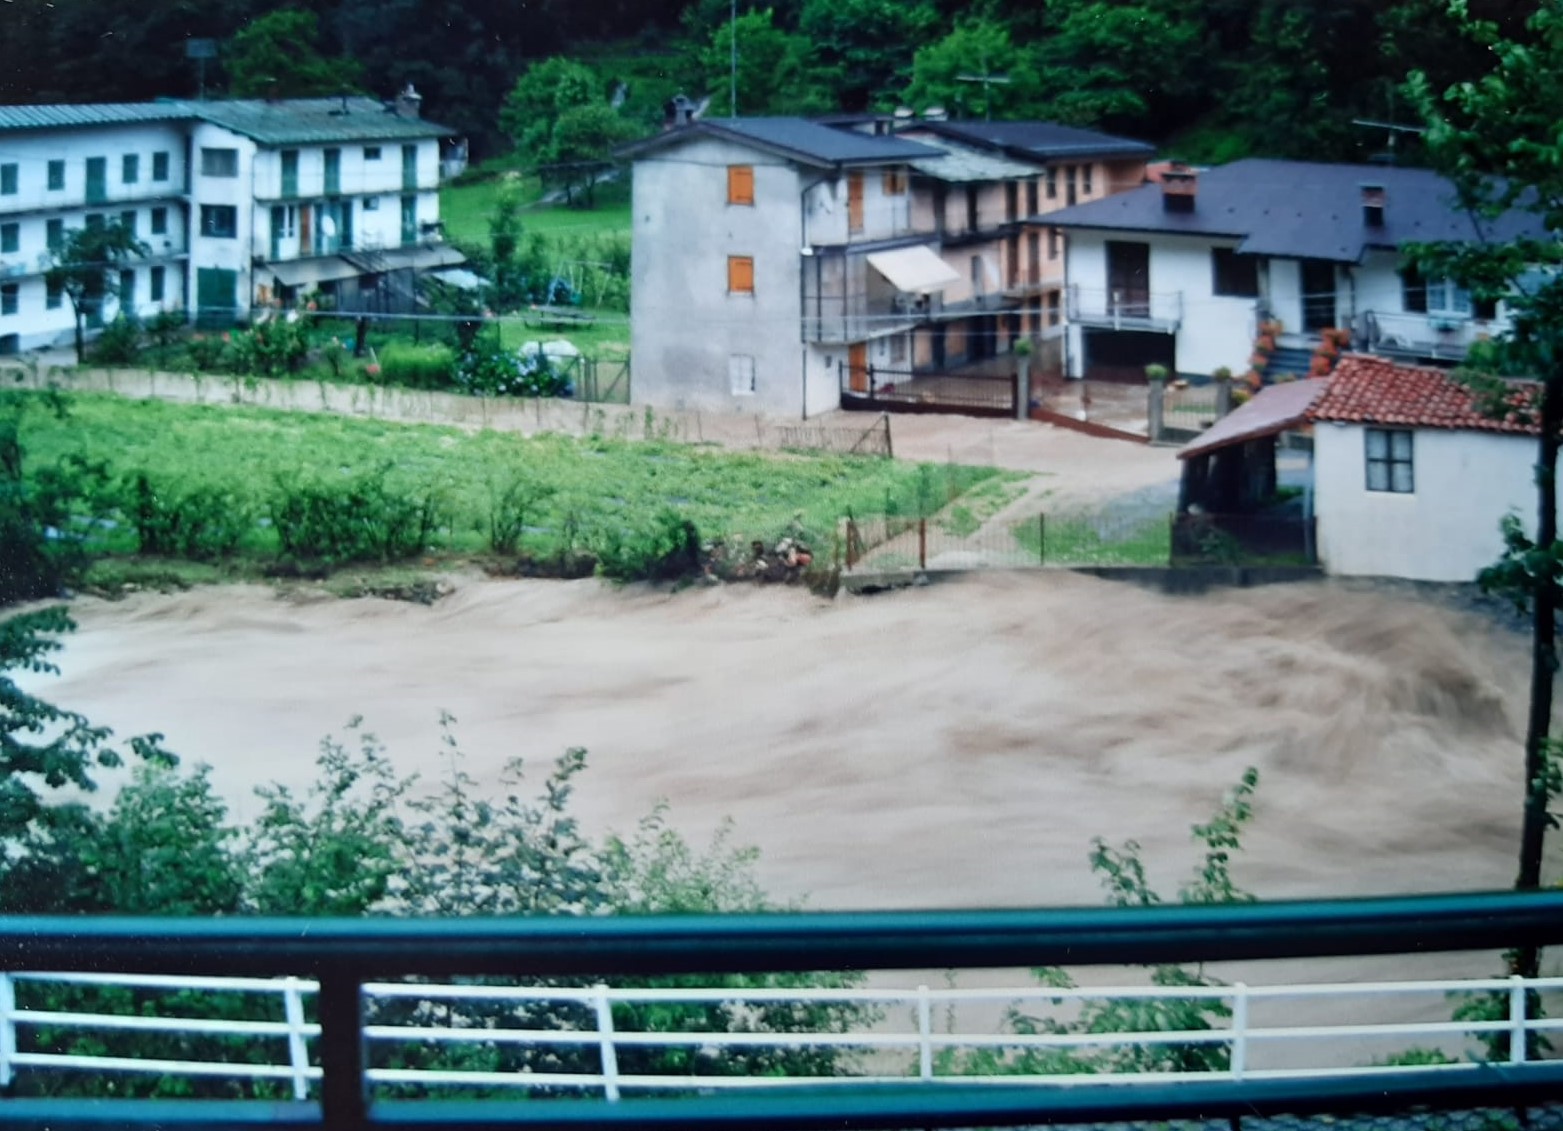 Chiusa di Pesio - foto alluvione 2002